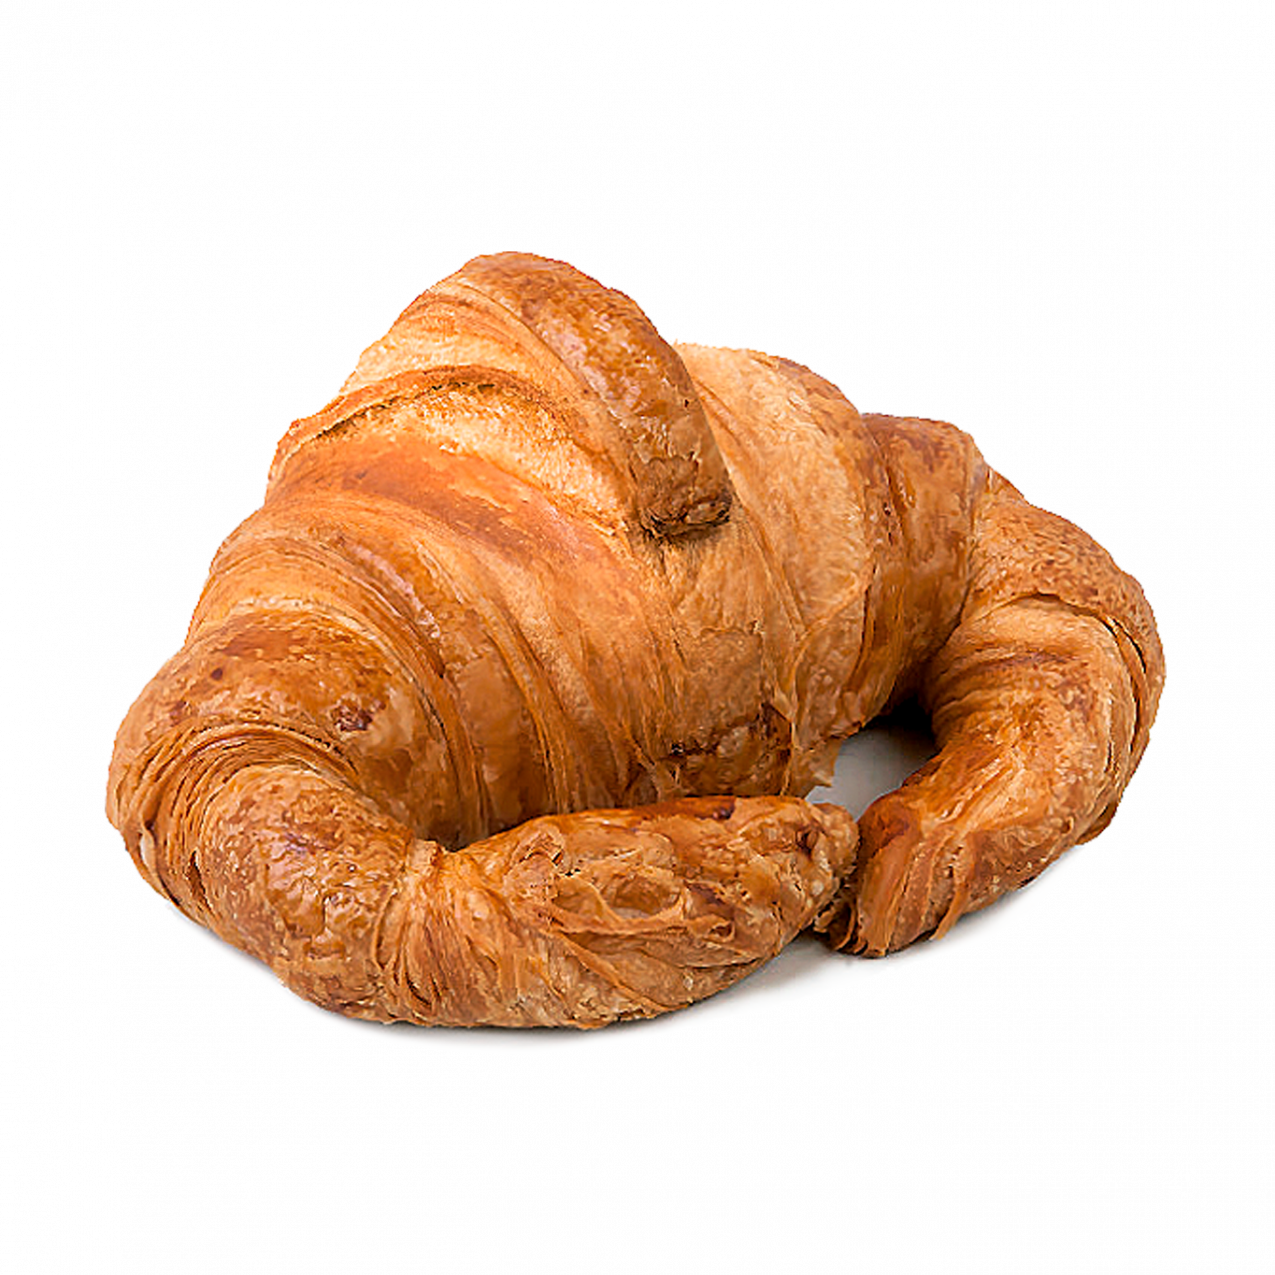 Croissant - el molino de Dia - x13/390g